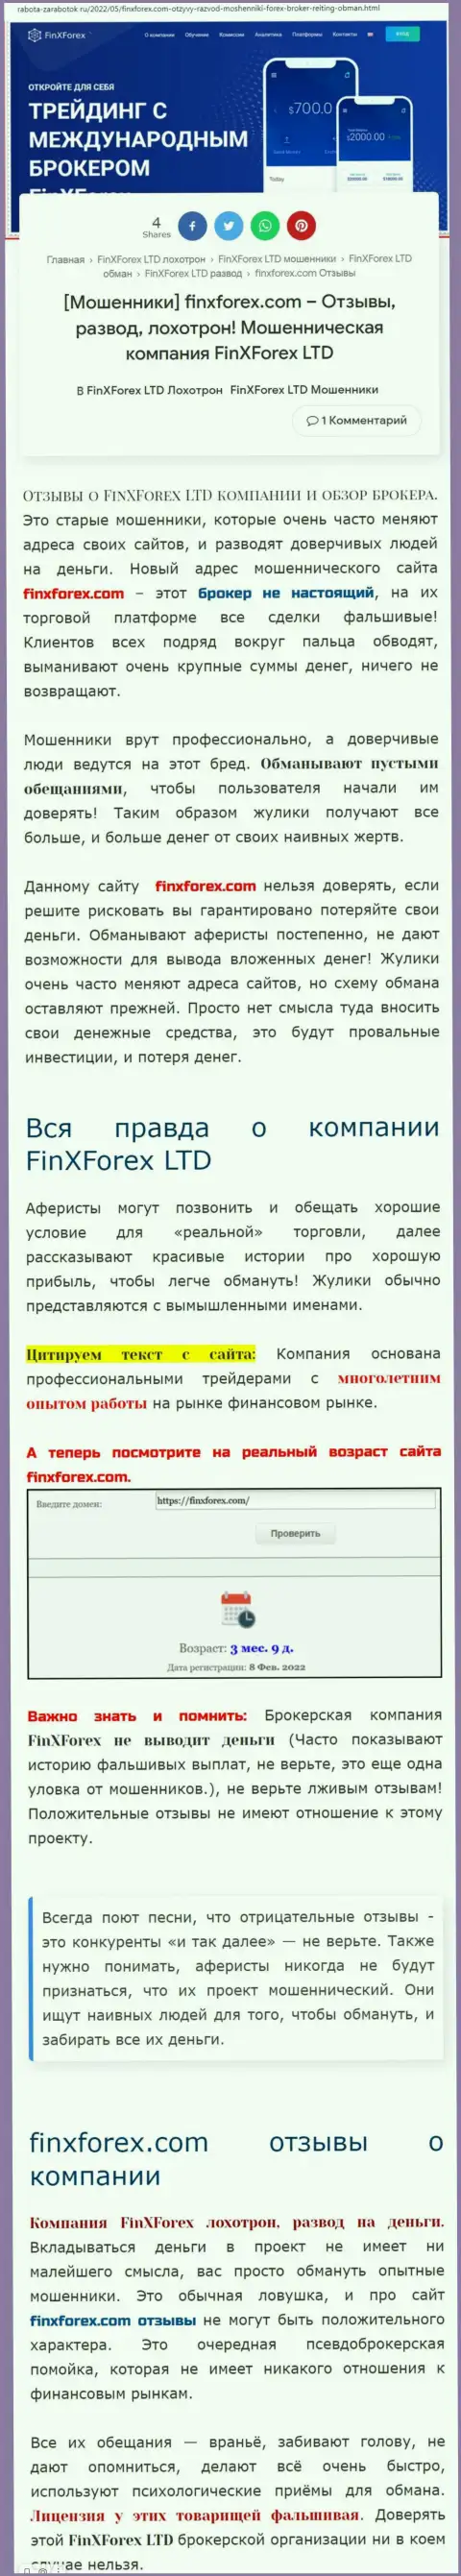 Автор обзорной статьи о FinXForex Com предупреждает, что в конторе FinXForex жульничают